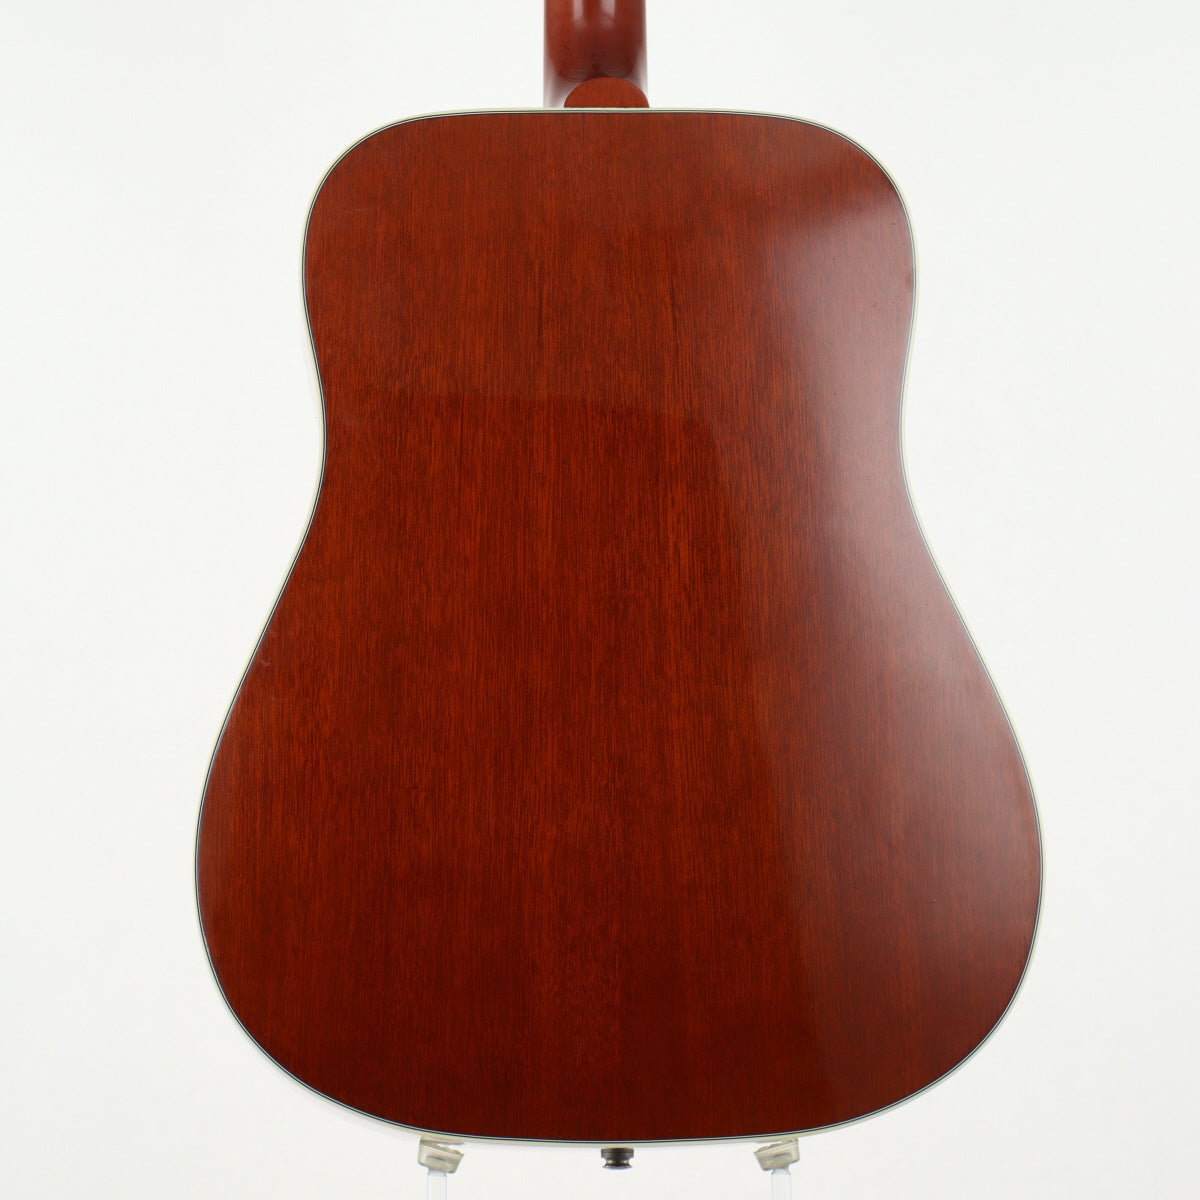 [SN 02376043] USED Gibson / Hummingbird 2006 [12]